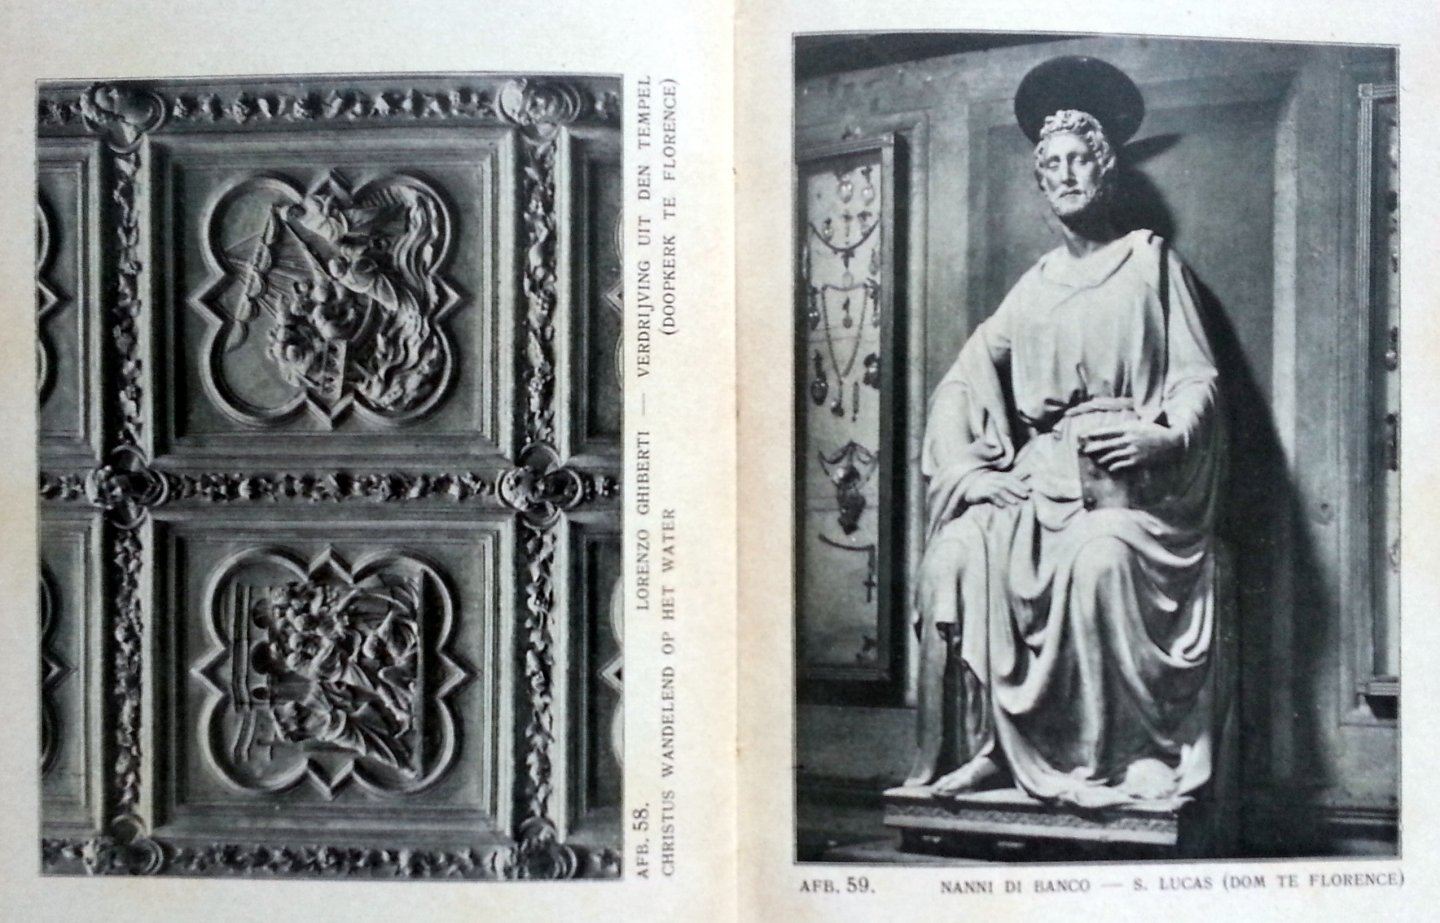 Vermeylen, August - Geschiedenis der Europeesche plastiek en schilderkunst - Eerste deel: De Middeleeuwen (van het begin der Christelijke kunst tot de voltooiing der "Aanbidding van het Lam" in 1432) - B Platen